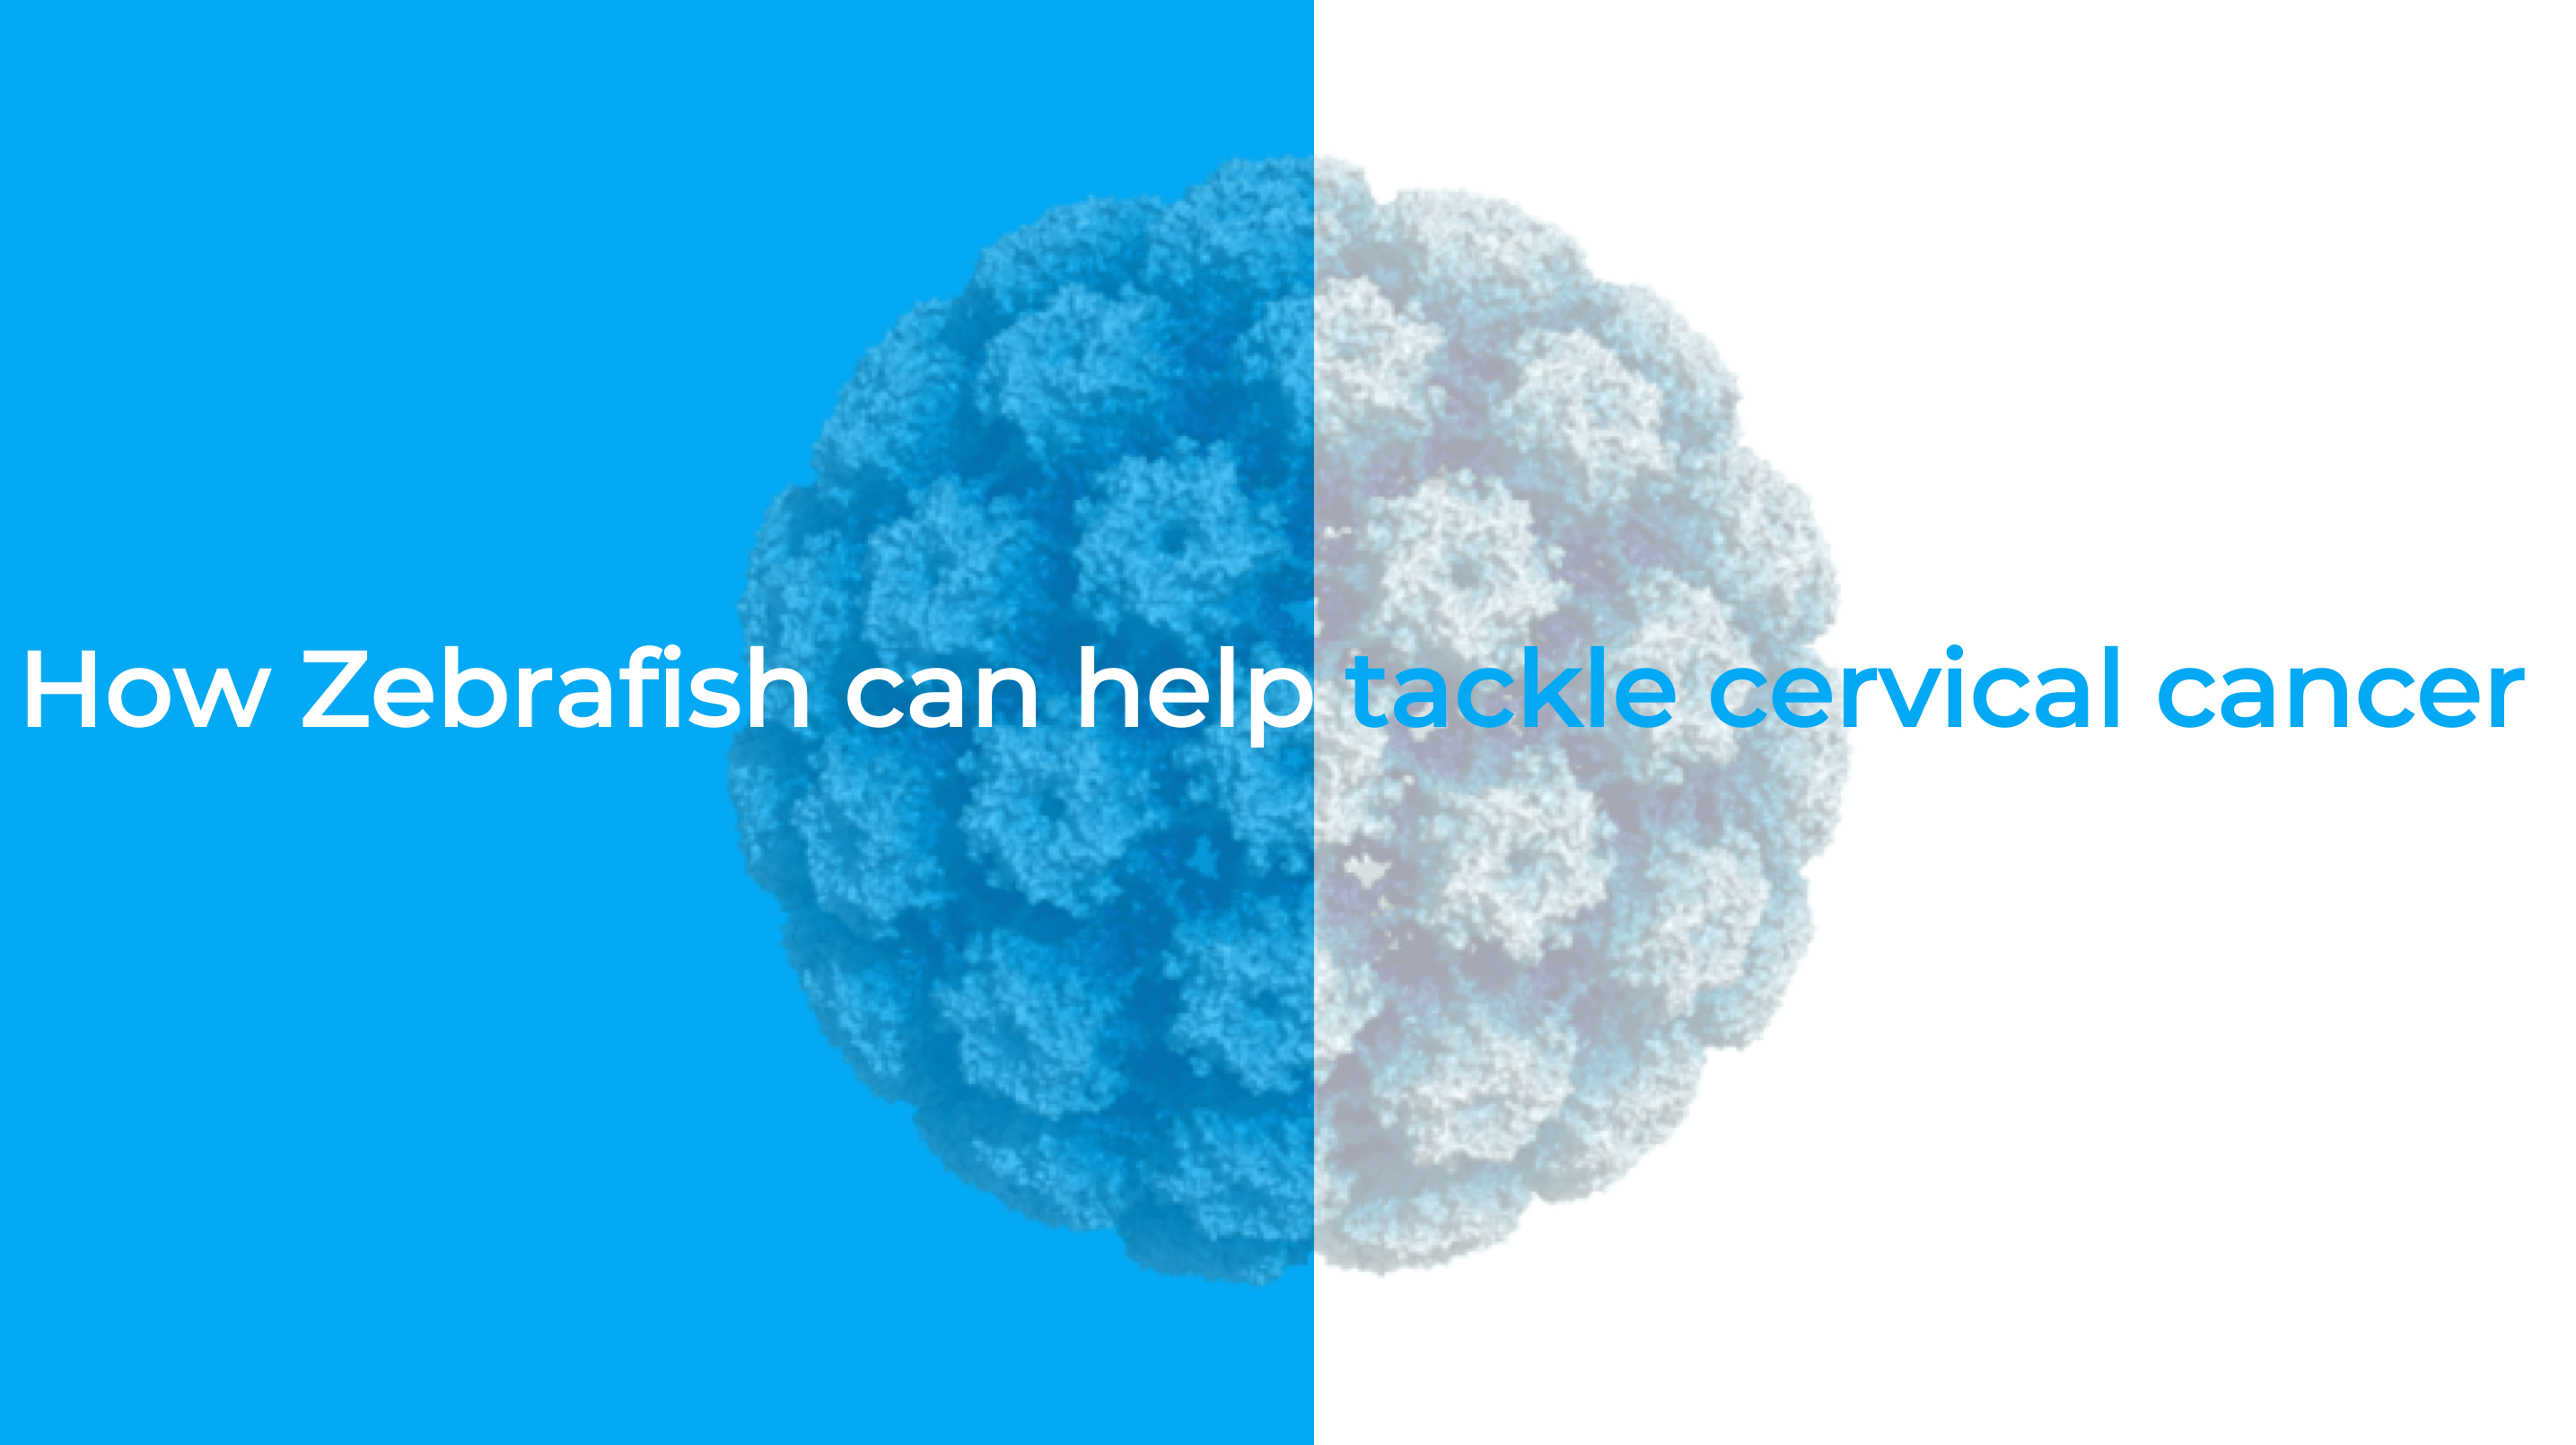 How zebrafish can help tackle cervical cancer